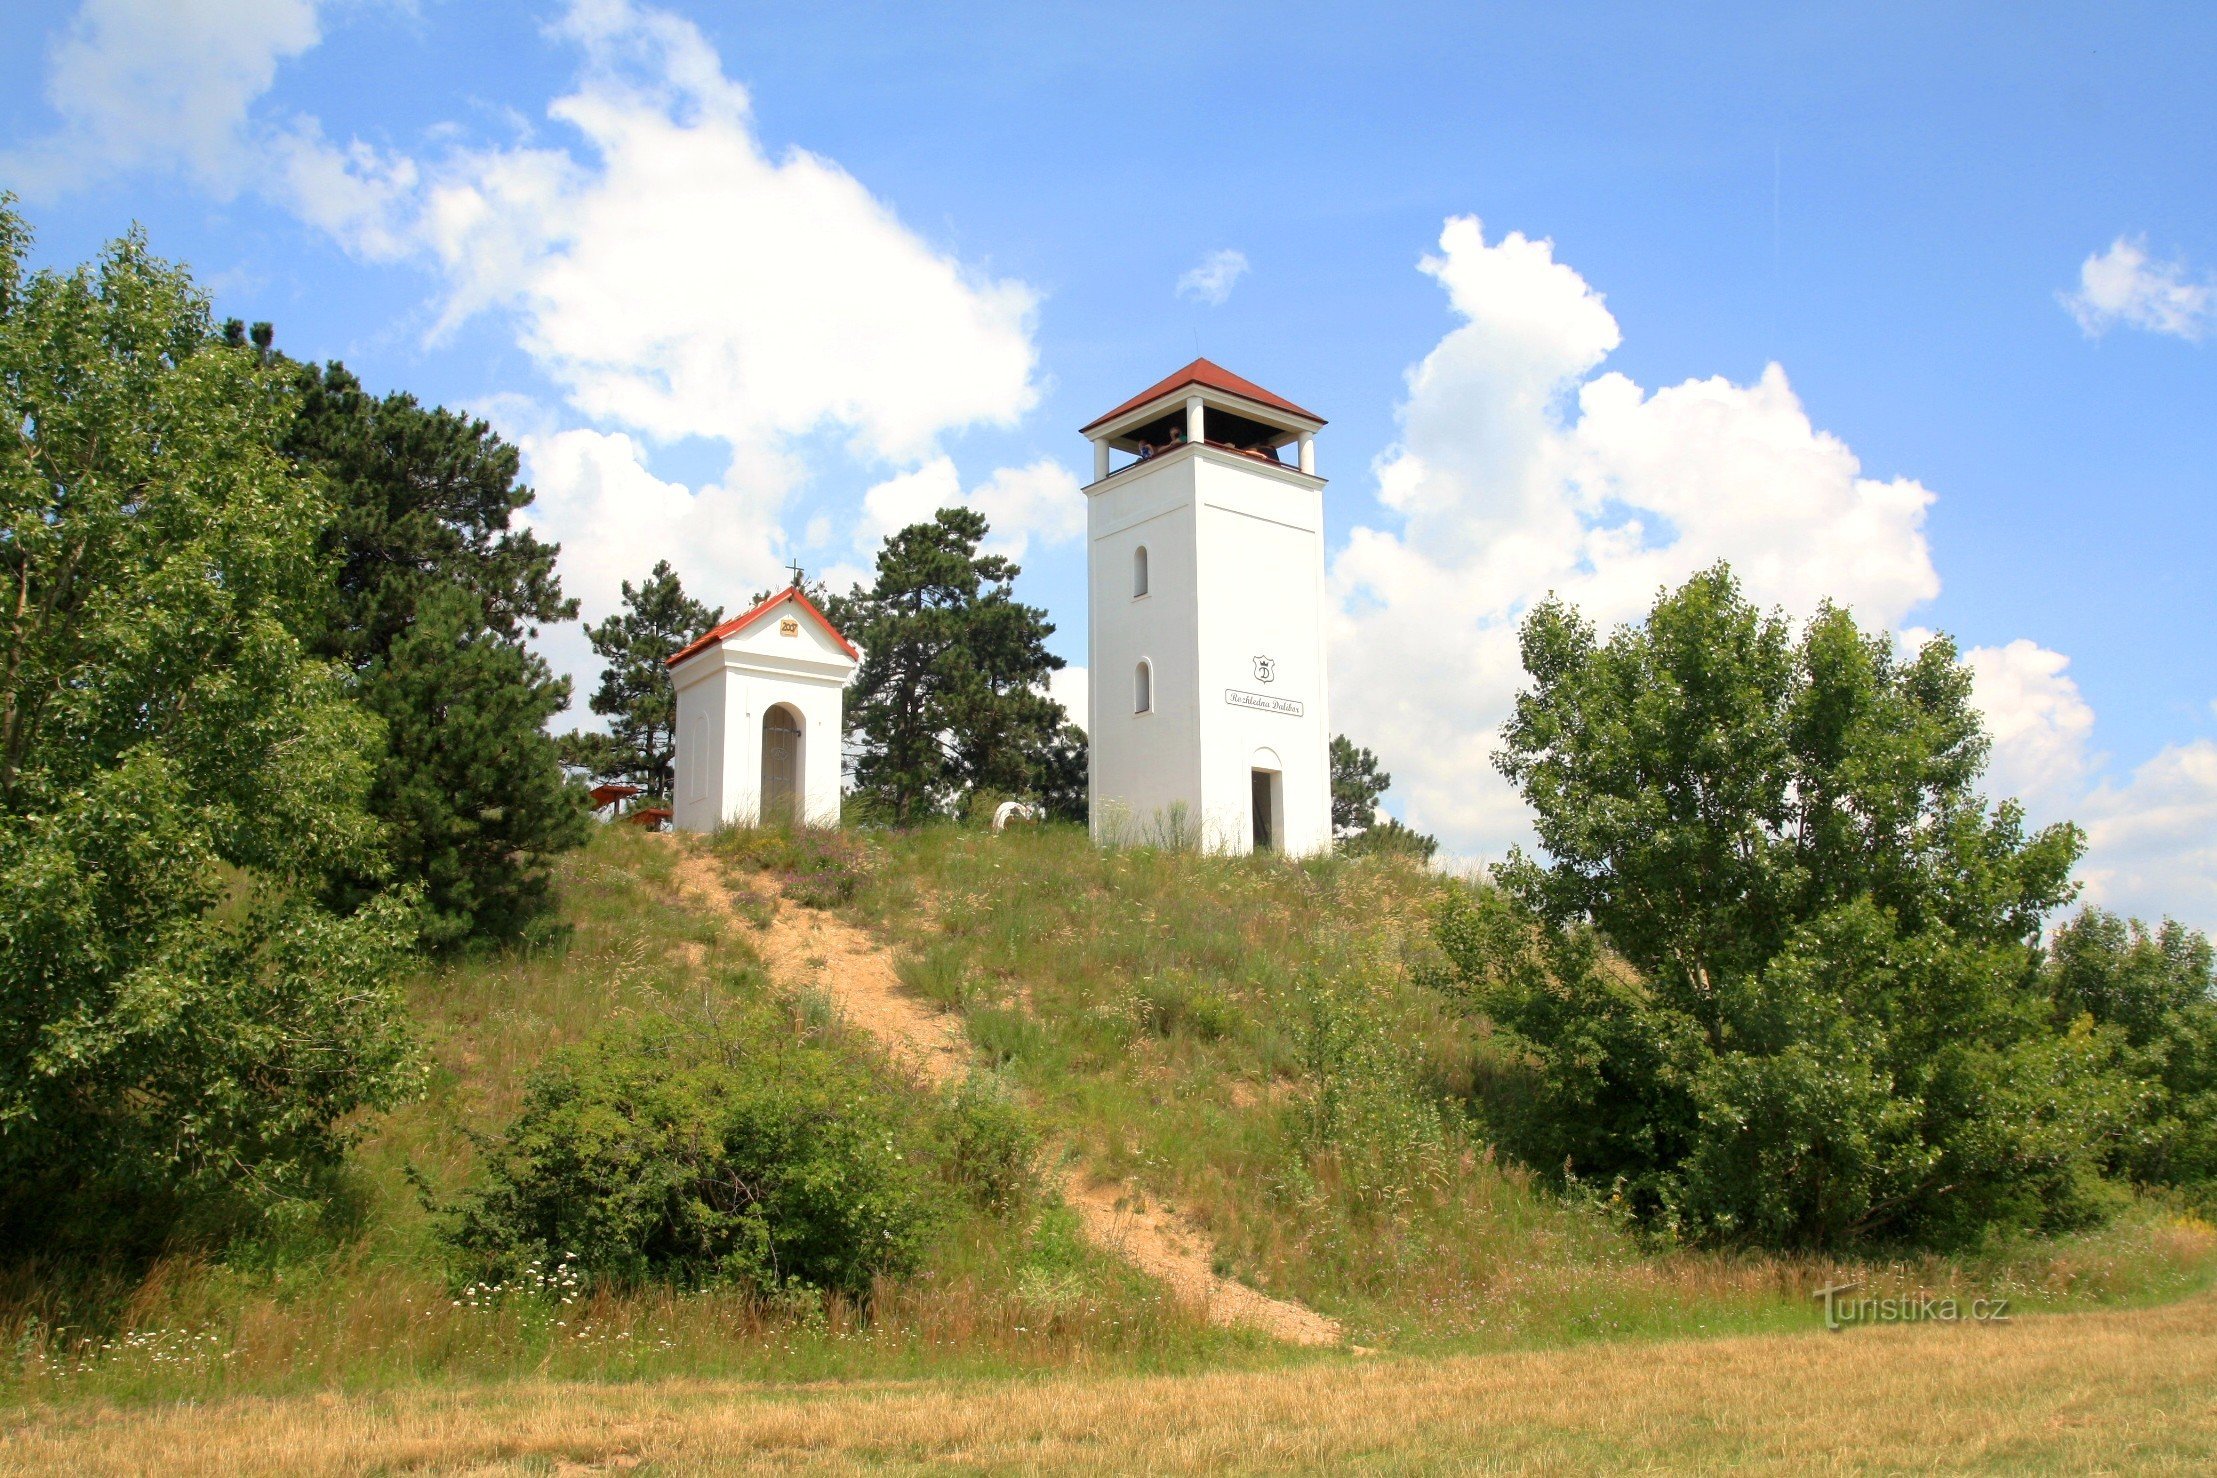 Die Spitze des Kalvarienberges mit der Kapelle St. Urbana und der Aussichtsturm Dalibor